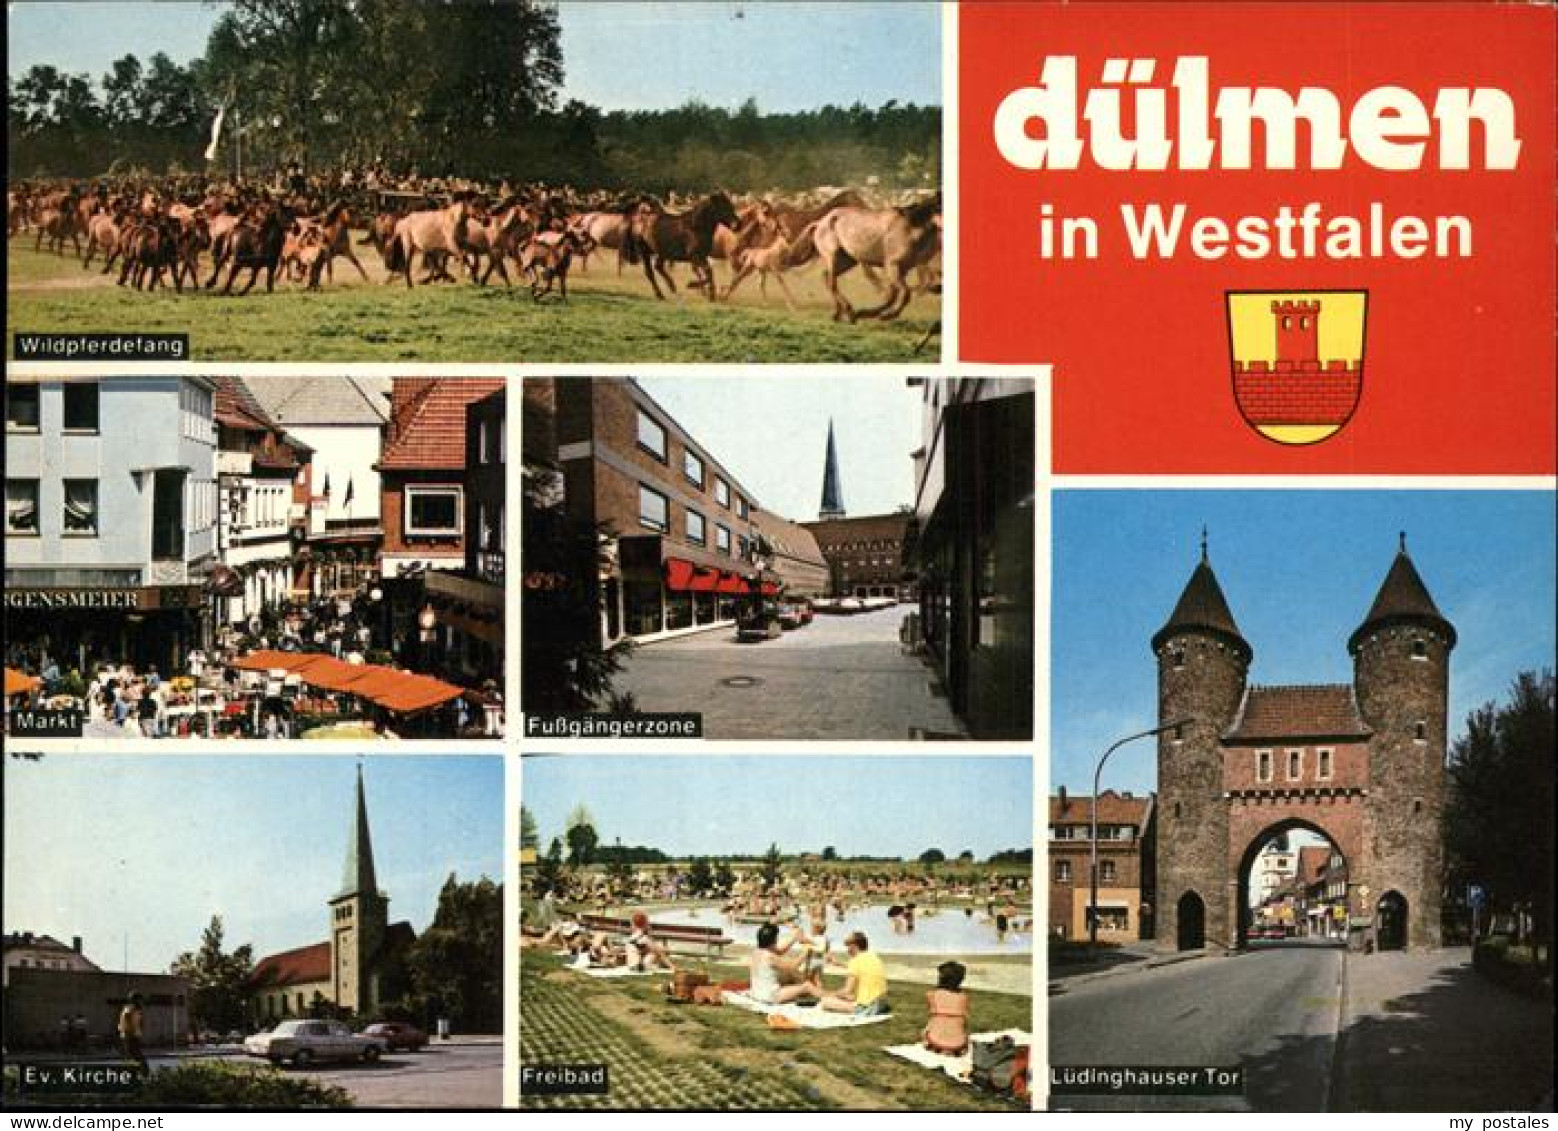 41287364 Duelmen Pferde Freibad Luedinghauser Tor Duelmen - Duelmen